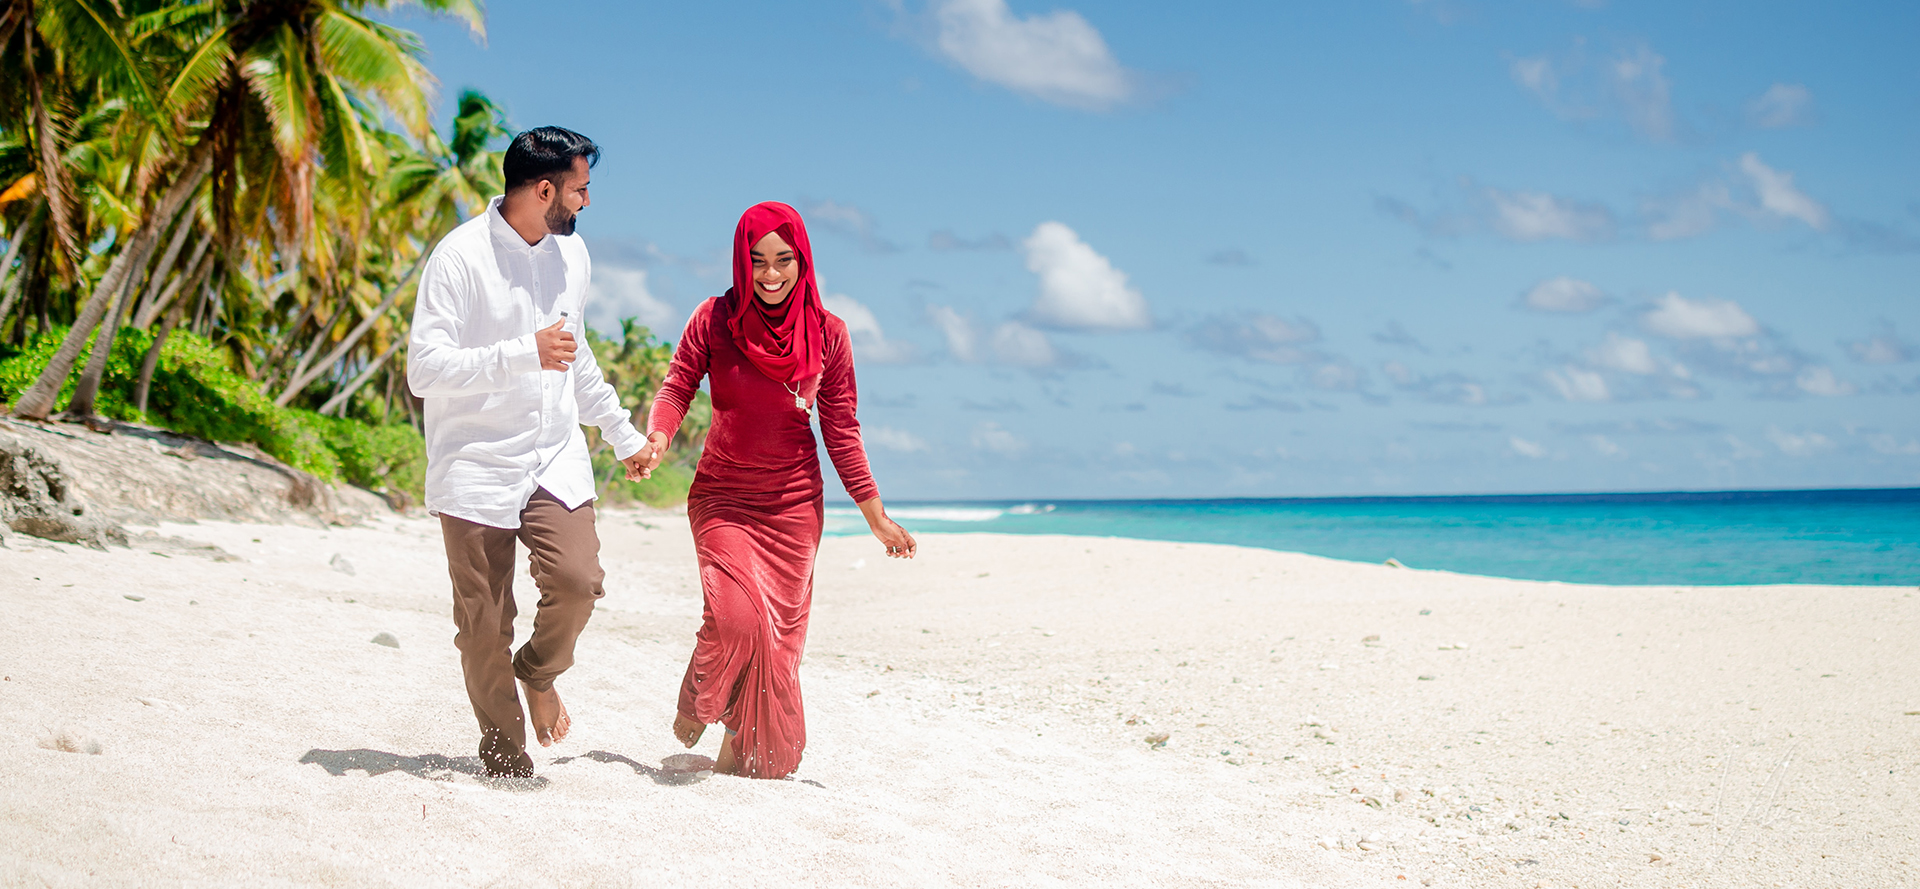 Arabiska singlar på en dejt promenerar längs stranden.